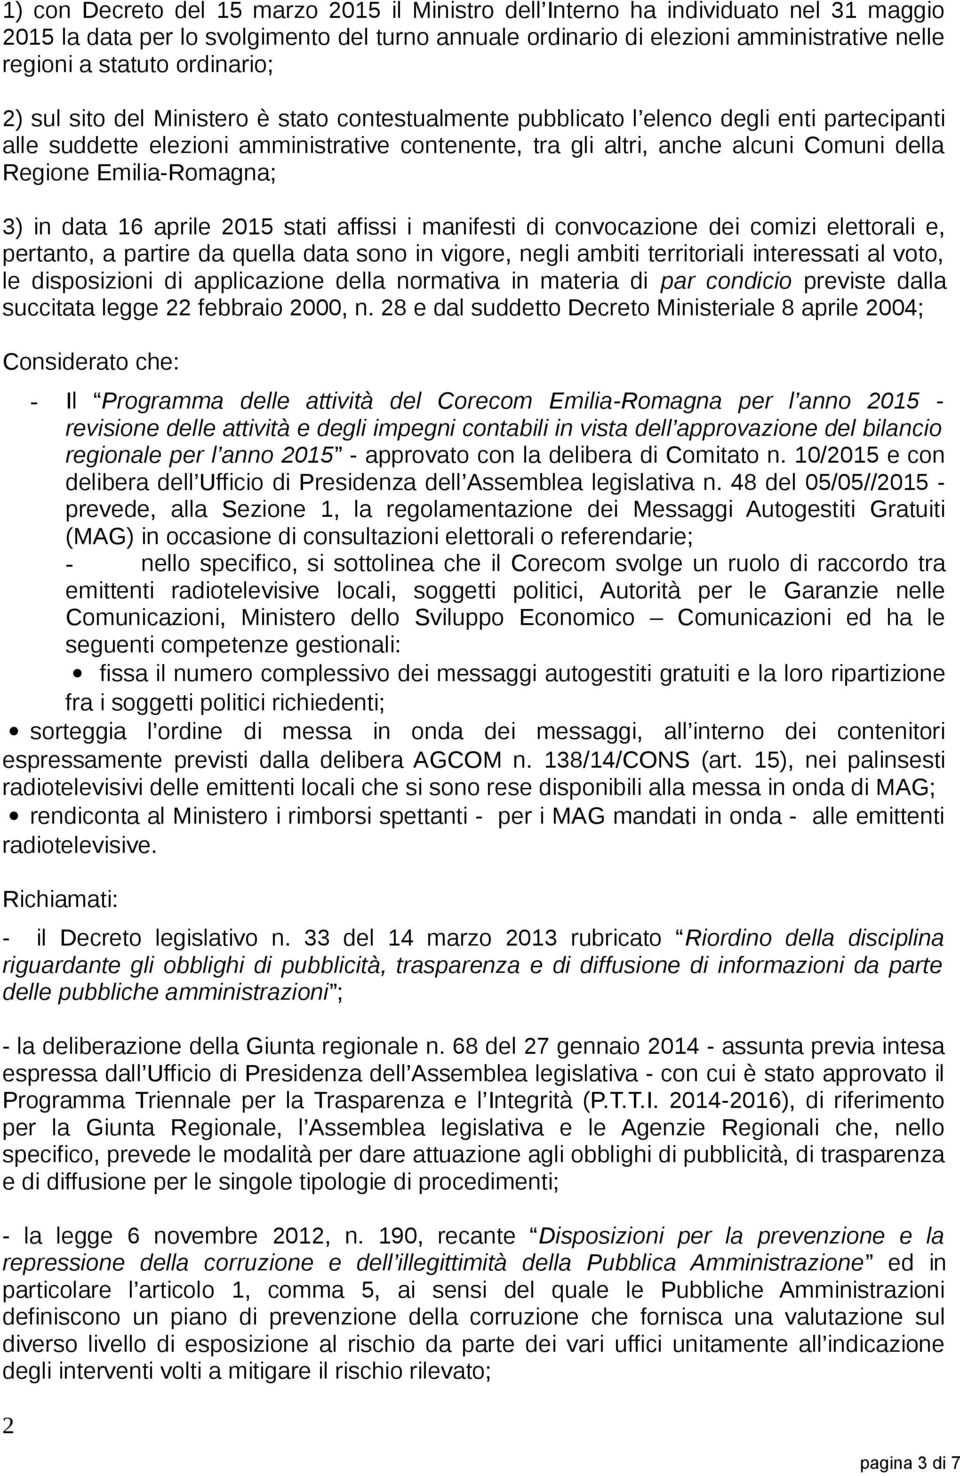 Regione Emilia-Romagna; 3) in data 16 aprile 2015 stati affissi i manifesti di convocazione dei comizi elettorali e, pertanto, a partire da quella data sono in vigore, negli ambiti territoriali